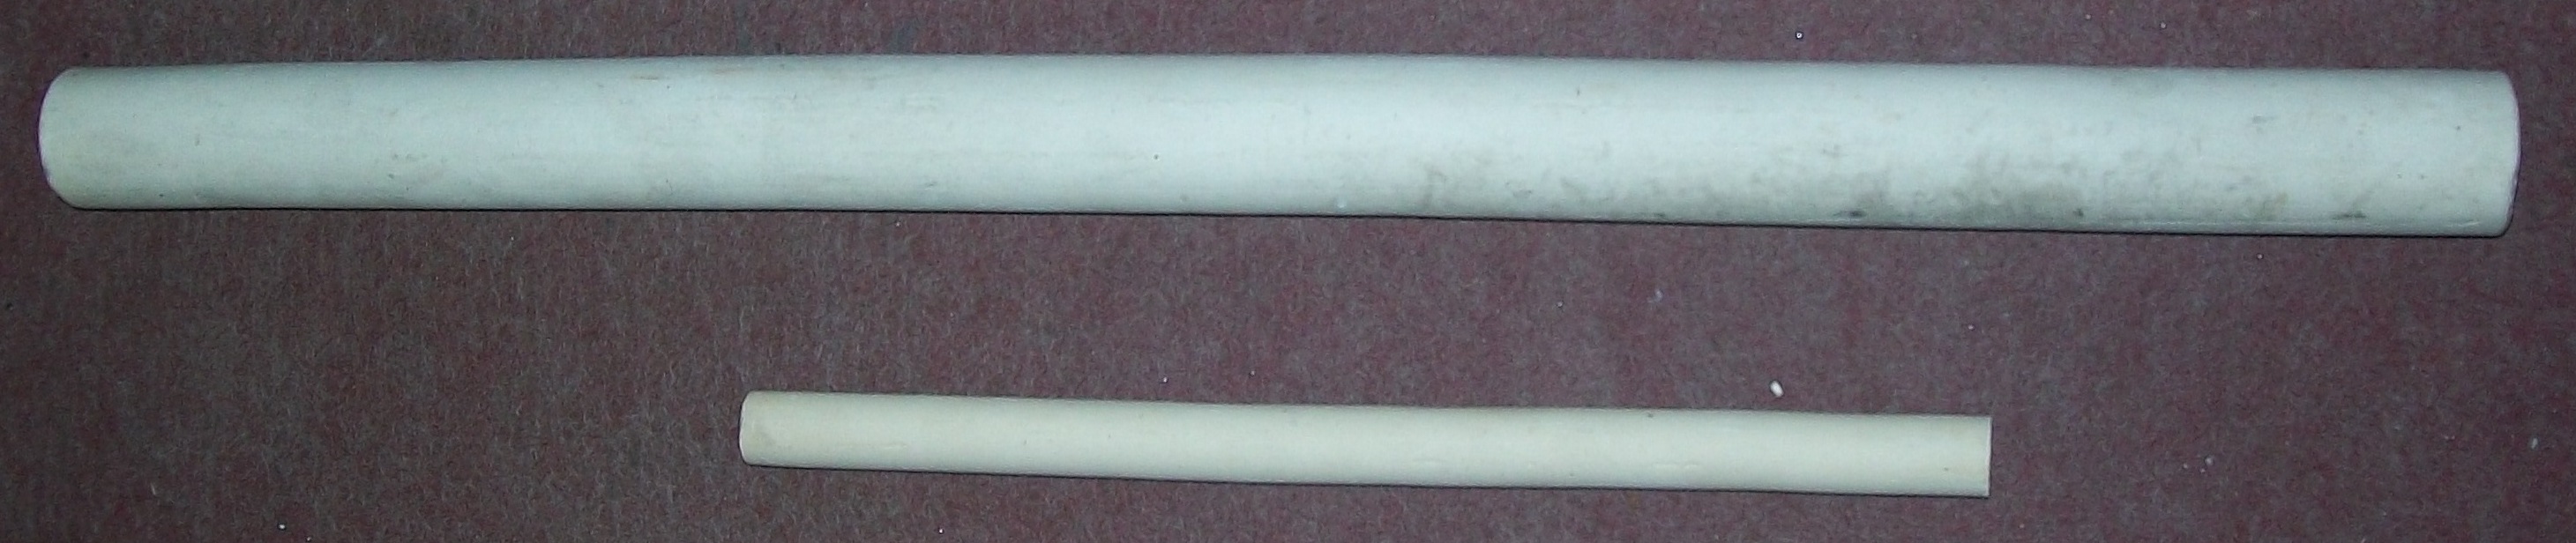 porcelain tube for grr resistance